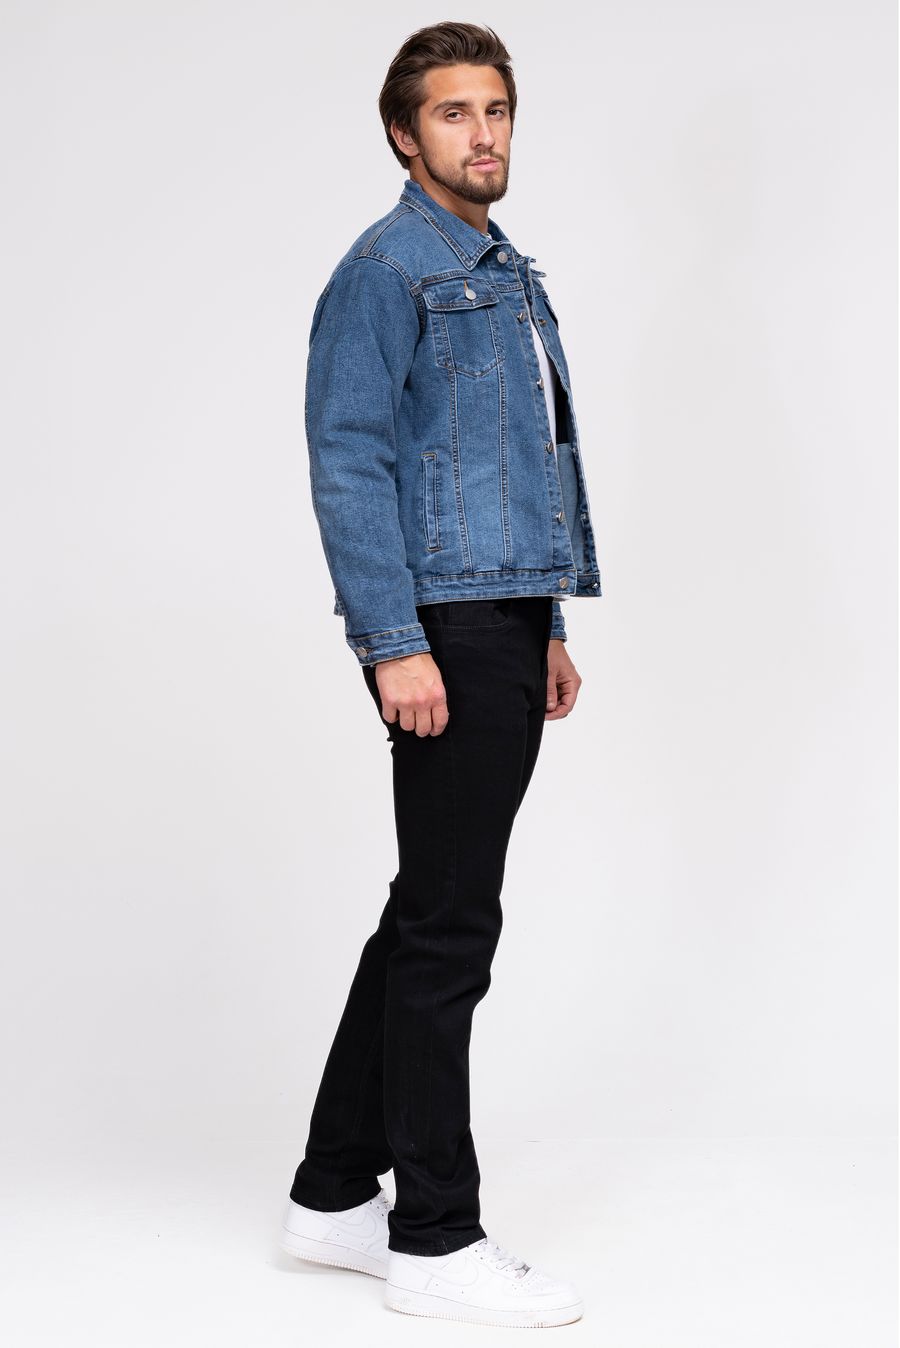 Пиджак мужской (джинсовка) LRZBS 2359 - фото 2